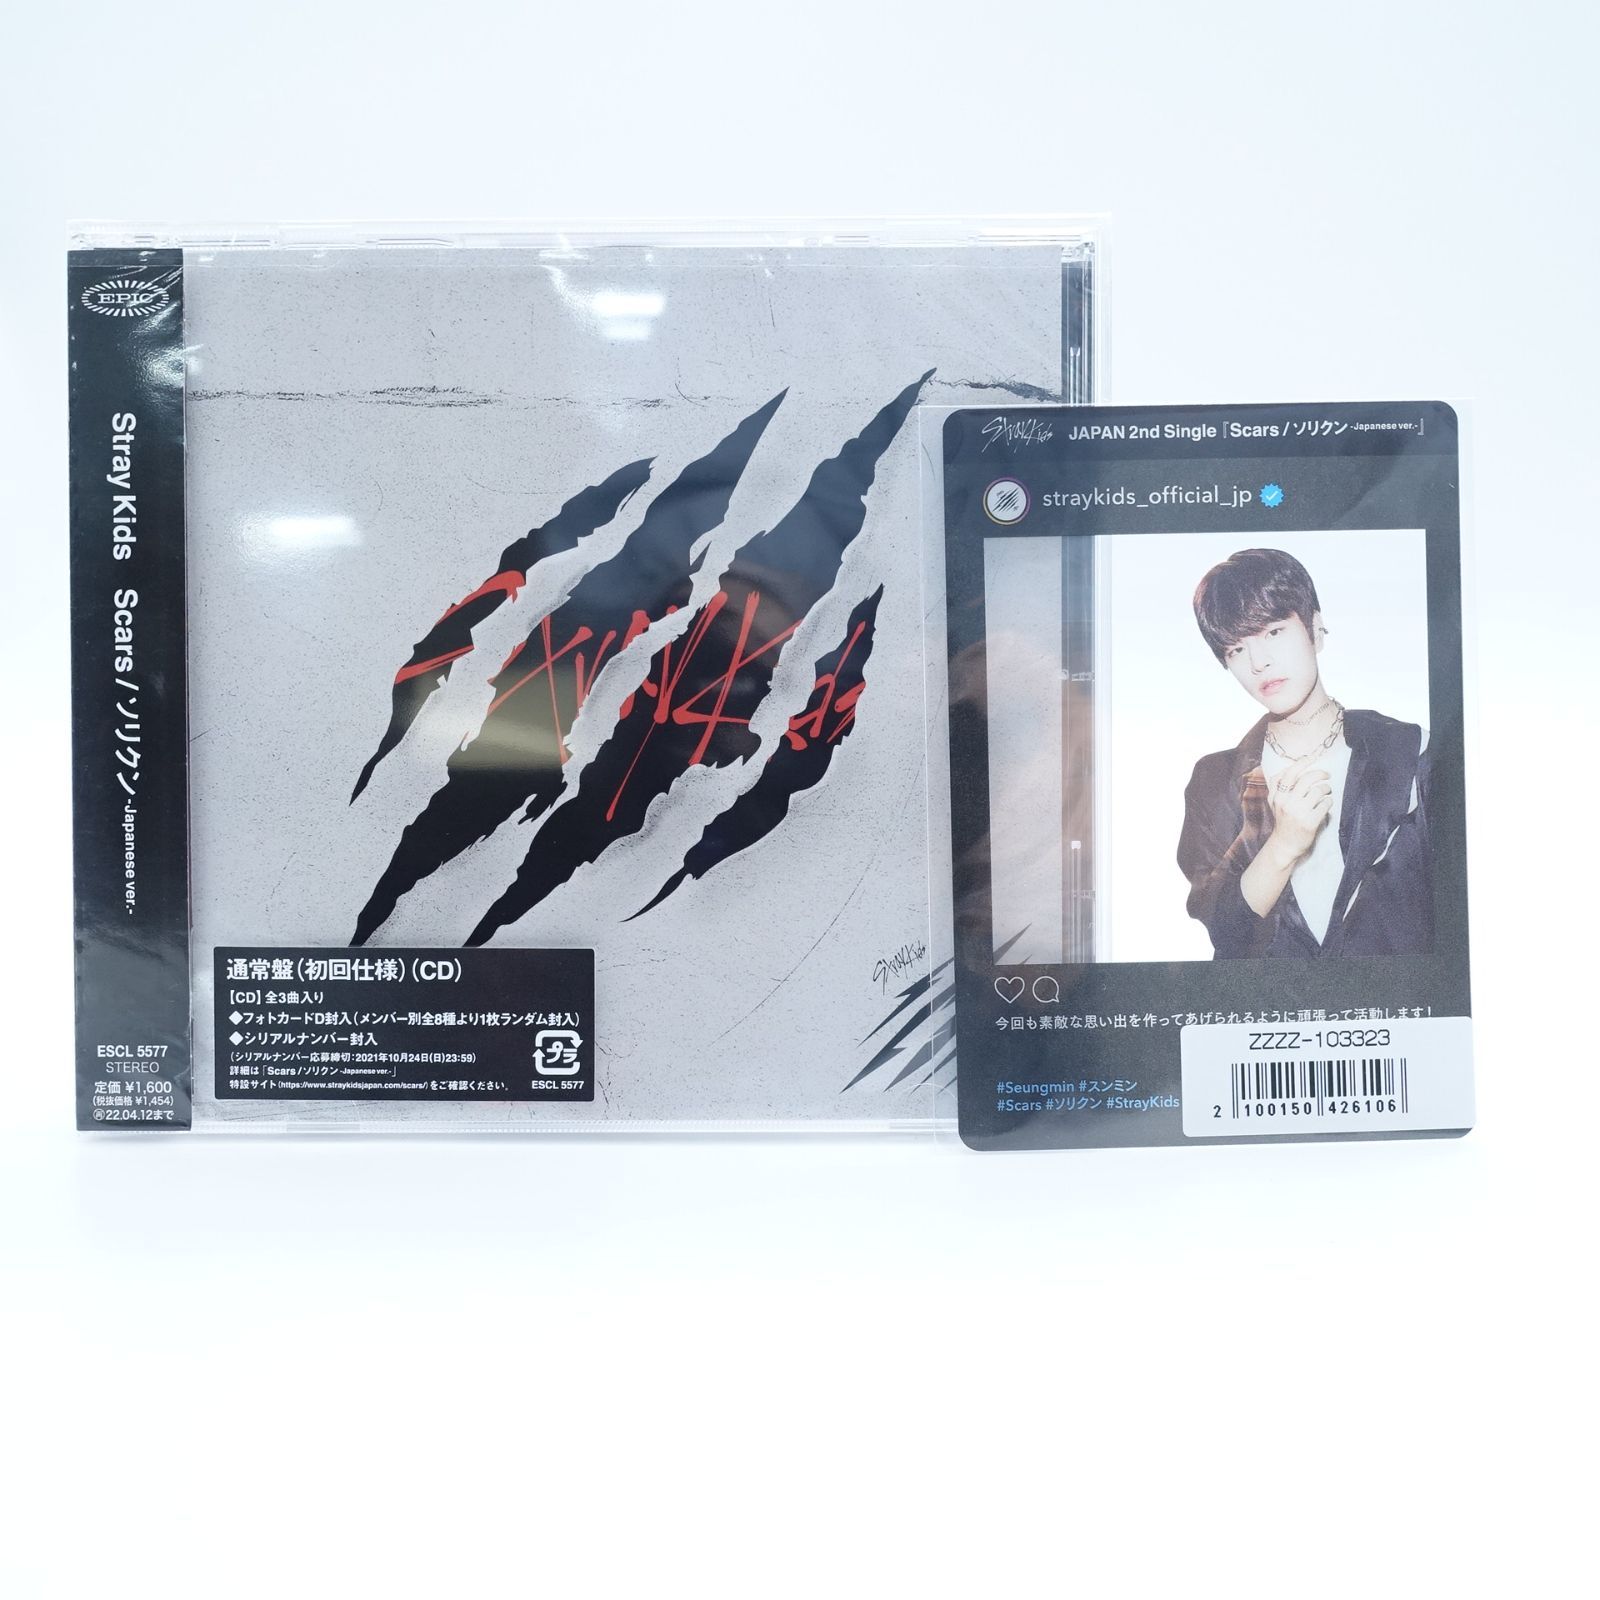 Stray Kids スンミン Scars/ソリクン-japanese ver.- CD 通常版(初回